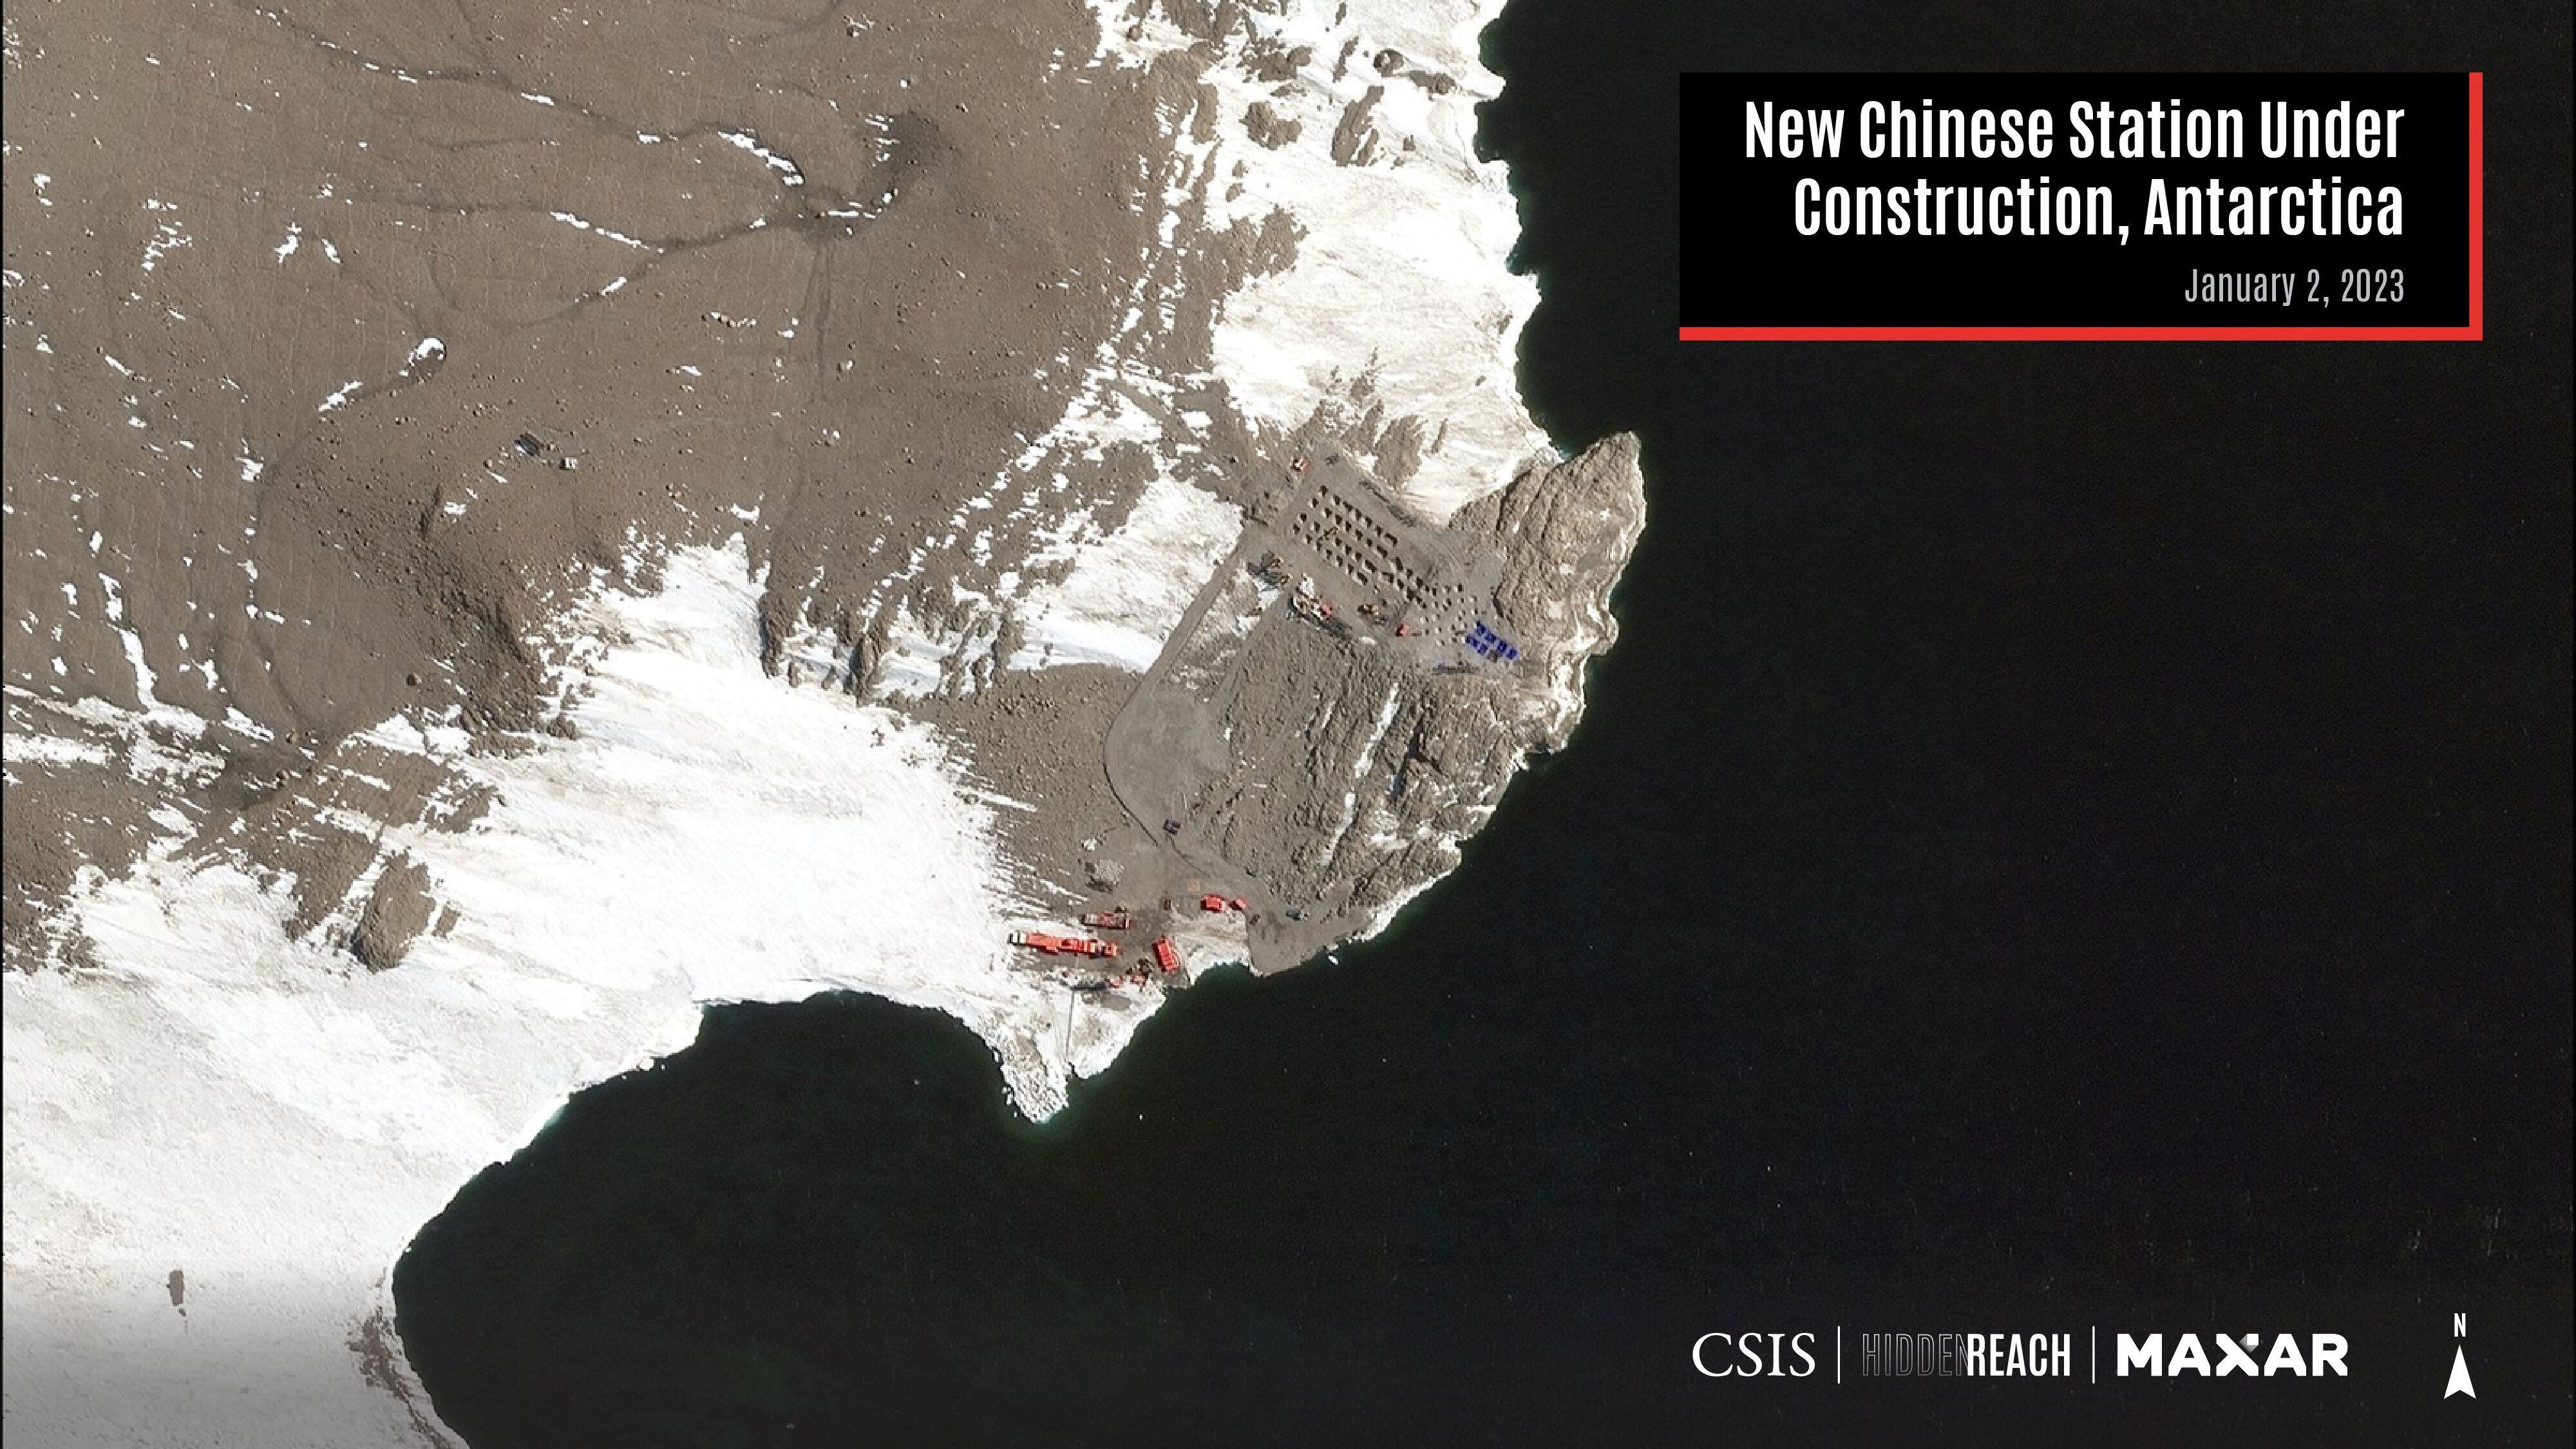 Una vista satelital muestra la nueva estación china en construcción, en la Isla Inexpresable, Antártida, el 2 de enero de 2023. Centro de Estudios Estratégicos e Internacionales (CSIS)/Hidden Reach/Maxar Technologies 2023/Folleto vía REUTERS